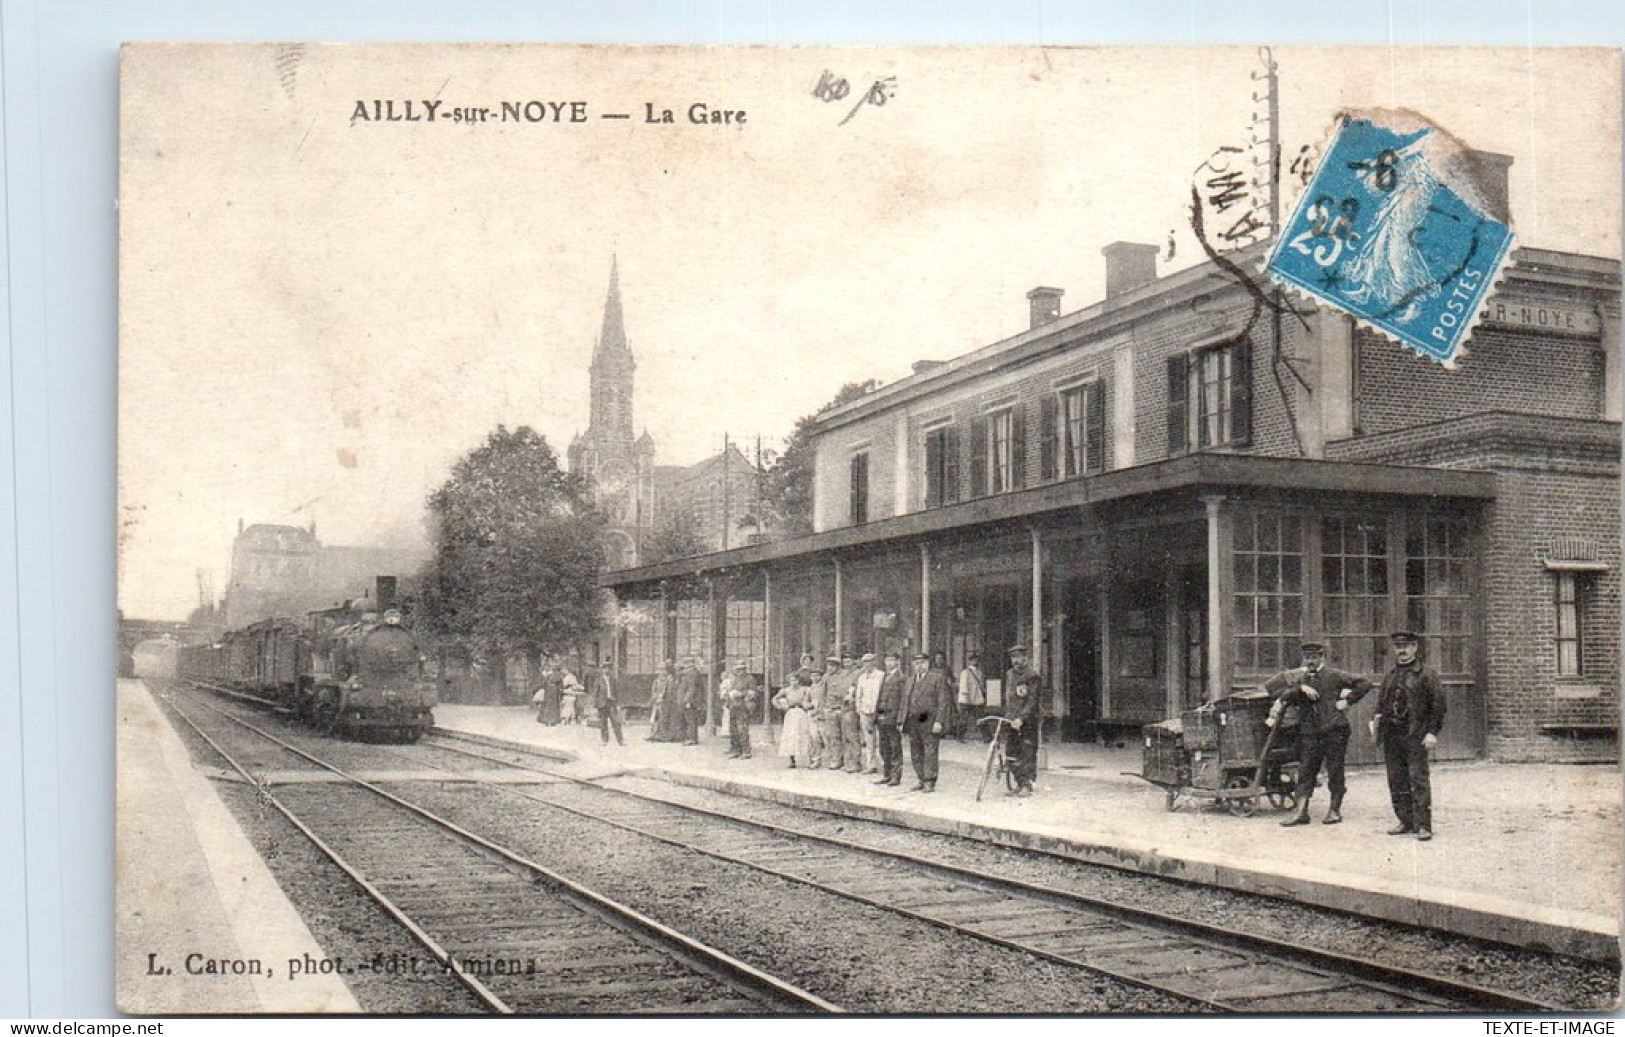 80 AILLY SUR NOYE - La Gare, L'arrivee D'un Train. - Ailly Sur Noye